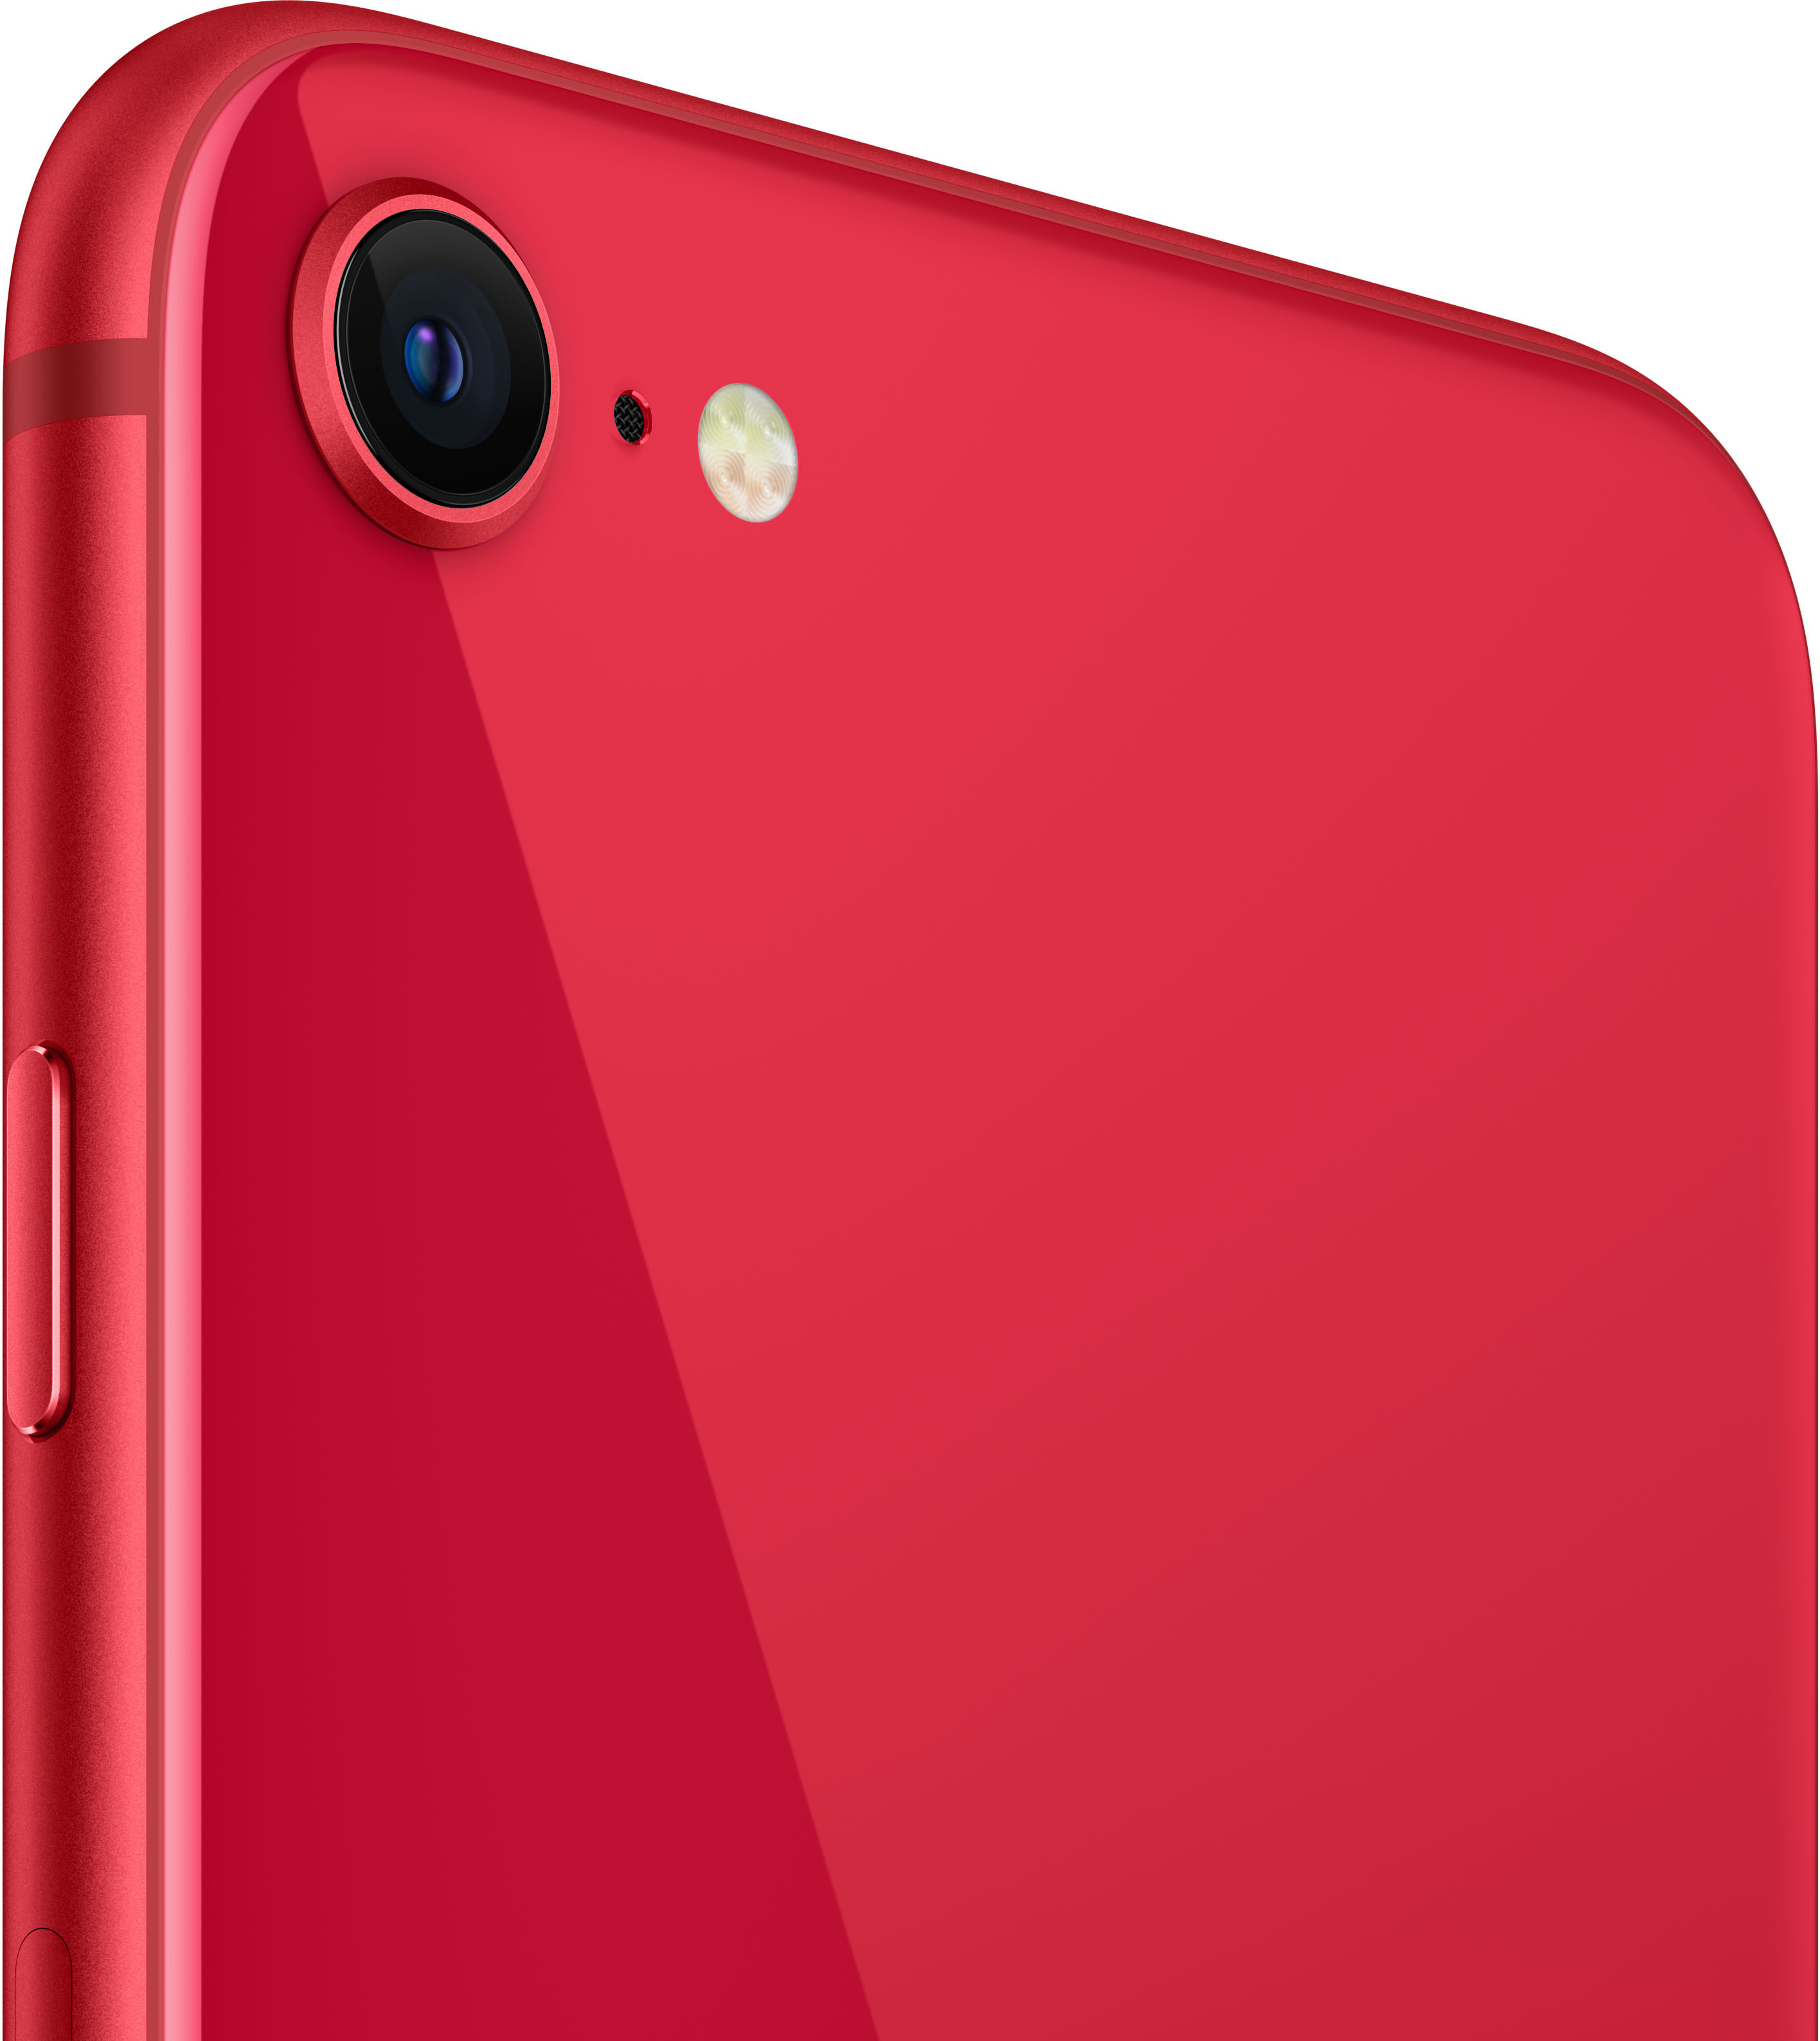 Смартфон Apple iPhone SE 2020 256GB (красный)